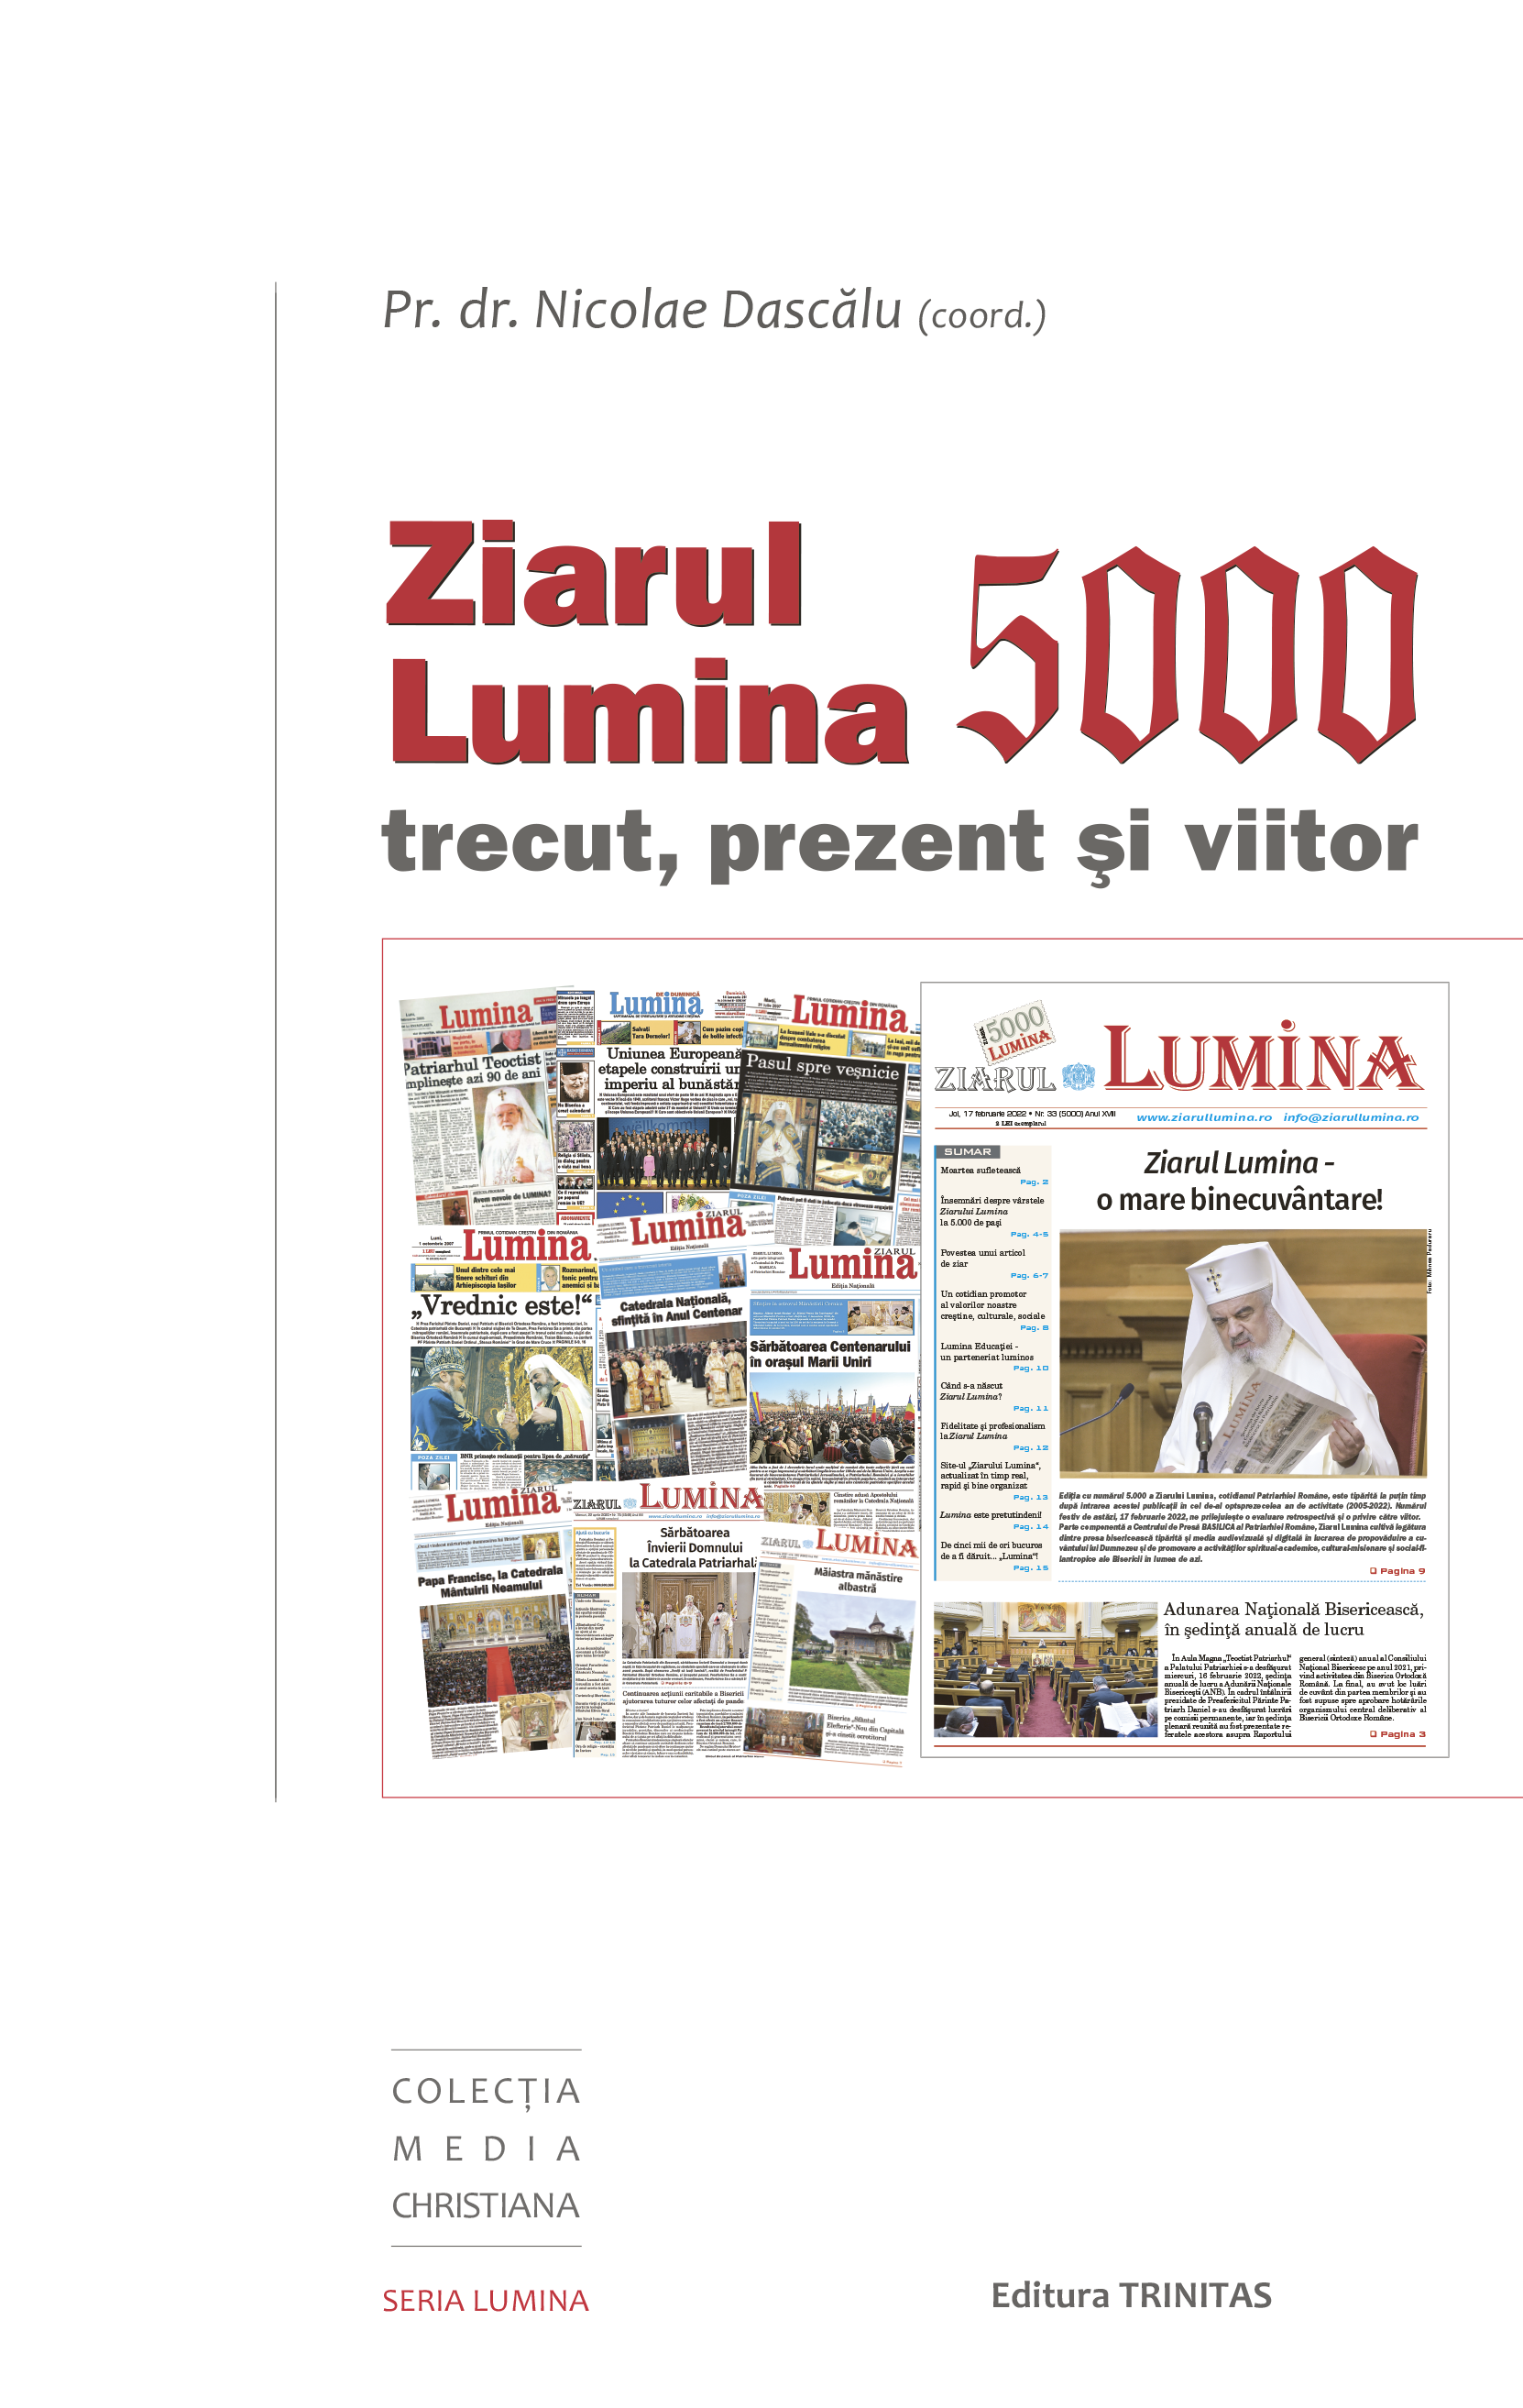 Ziarul Lumina 5.000: trecut, prezent și viitor